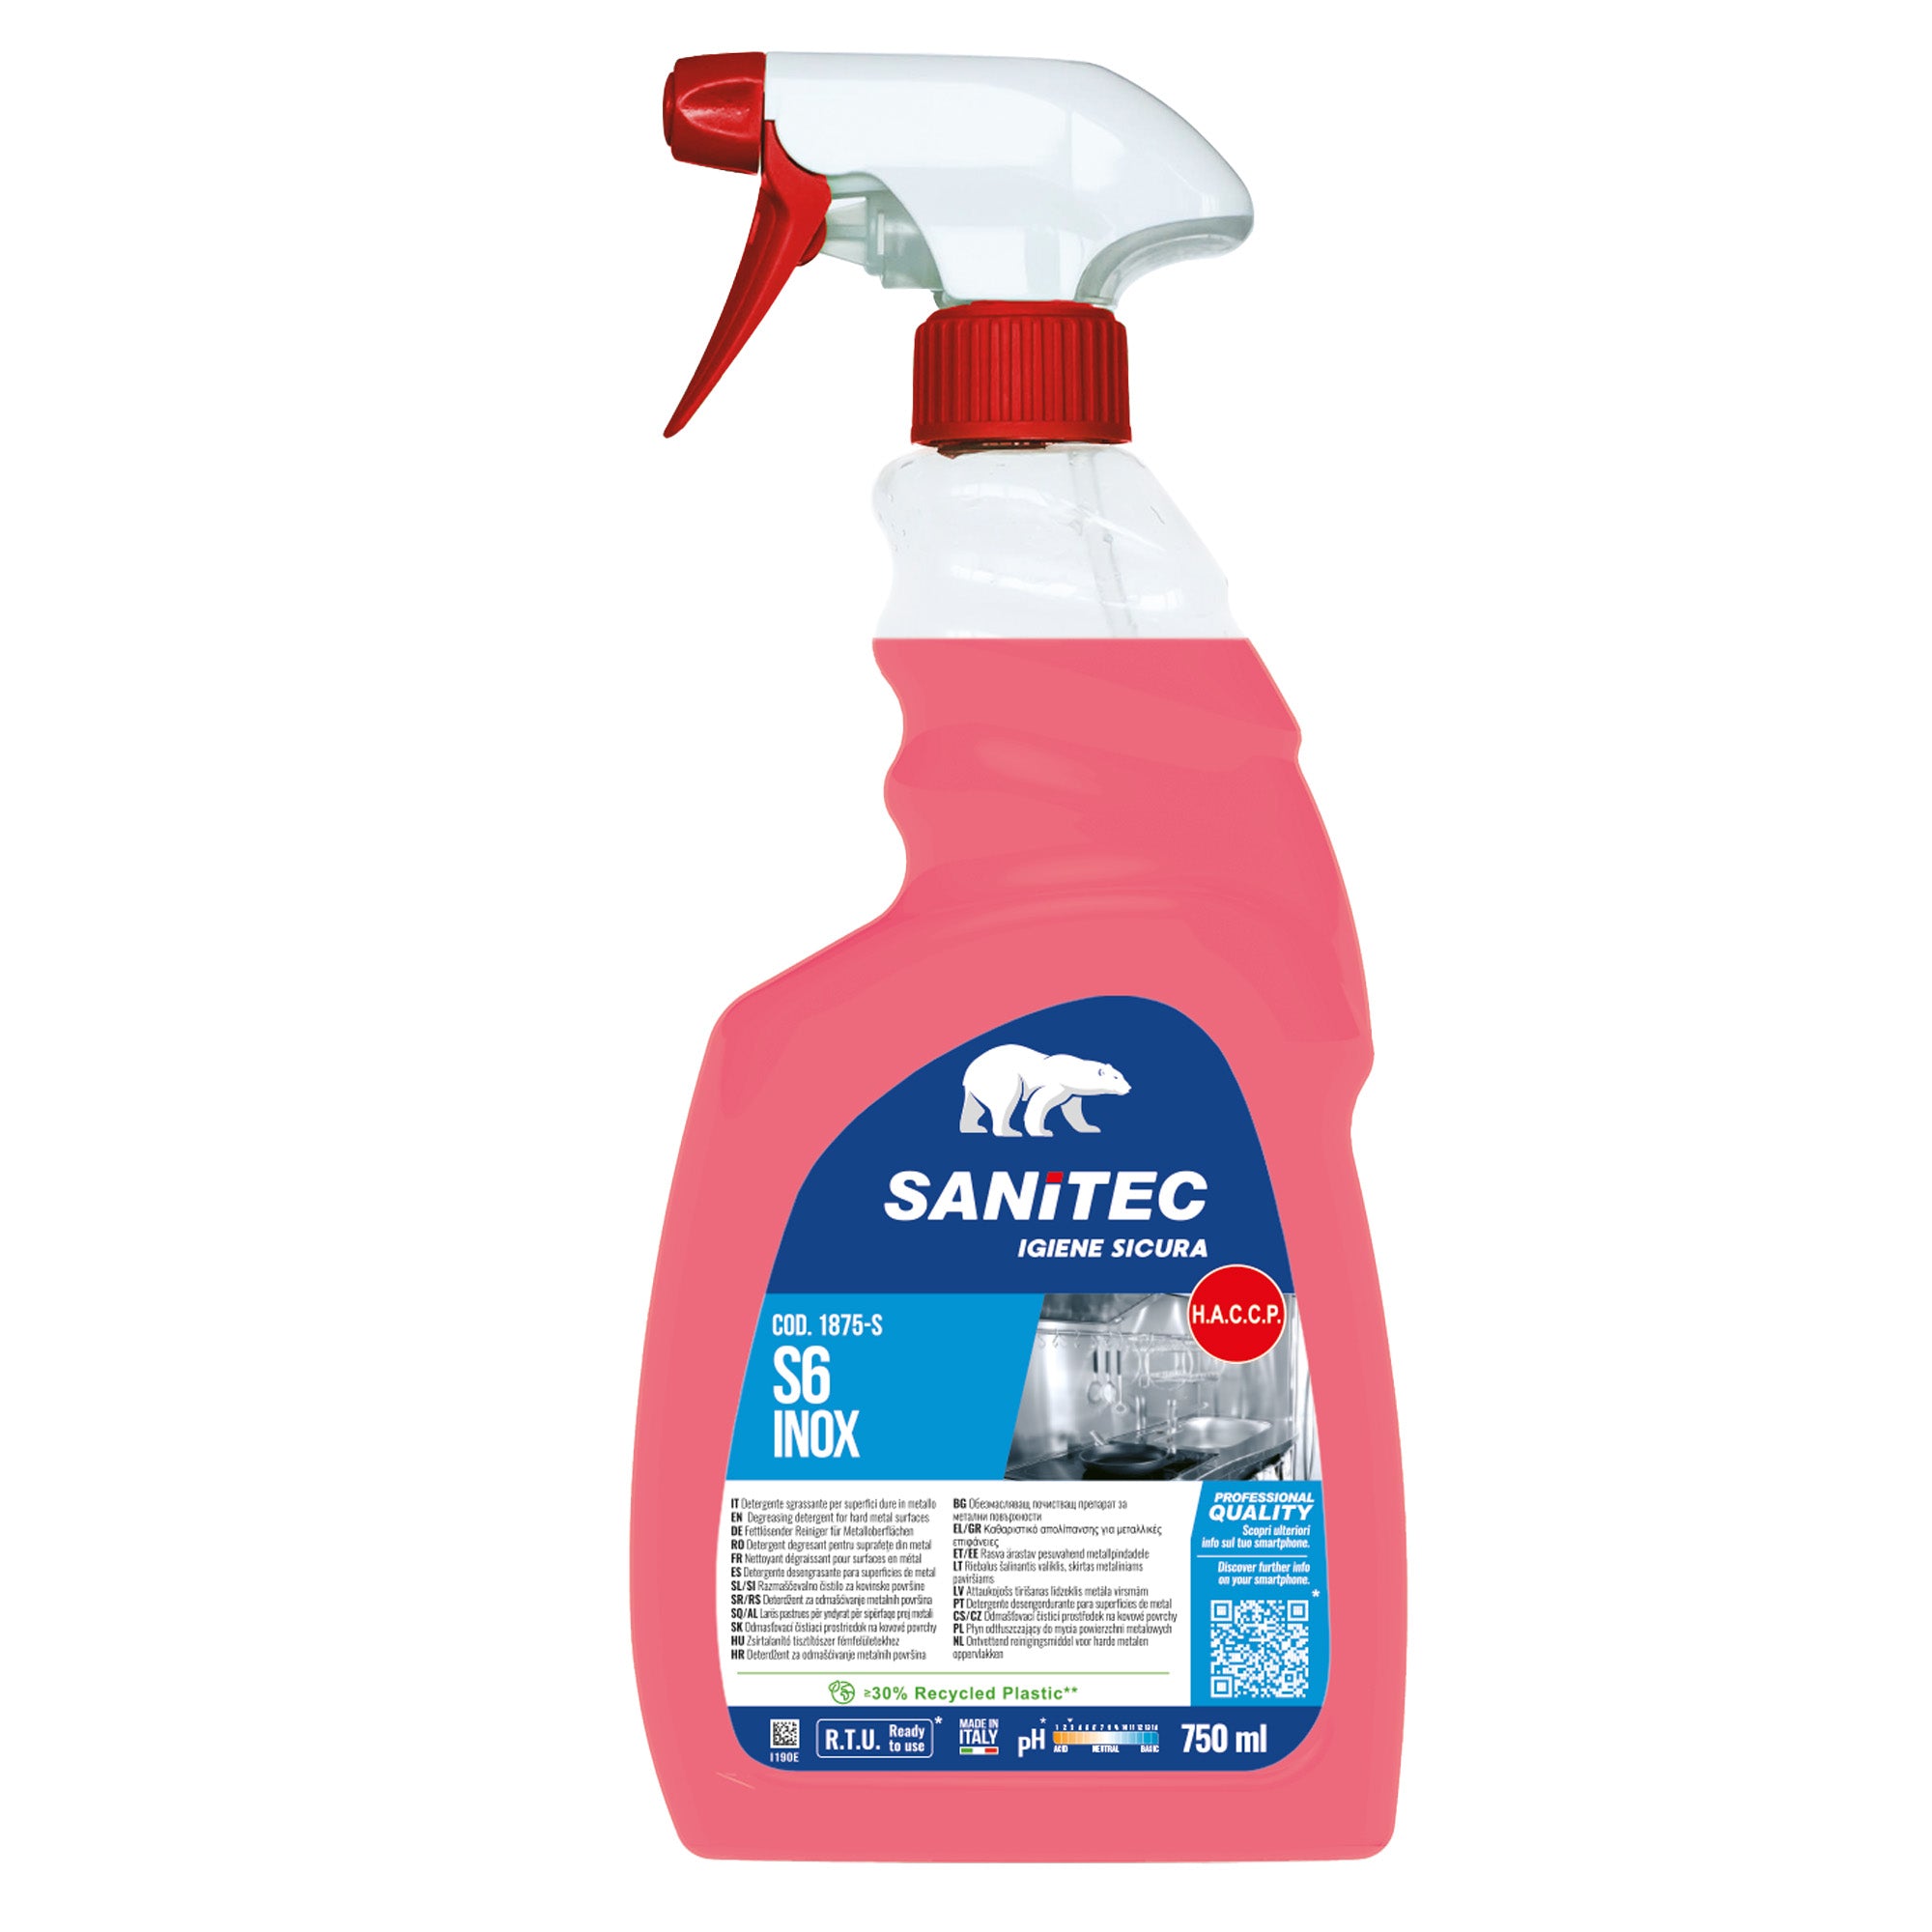 sanitec-detergente-sgrassante-superfici-s6-inox-750ml